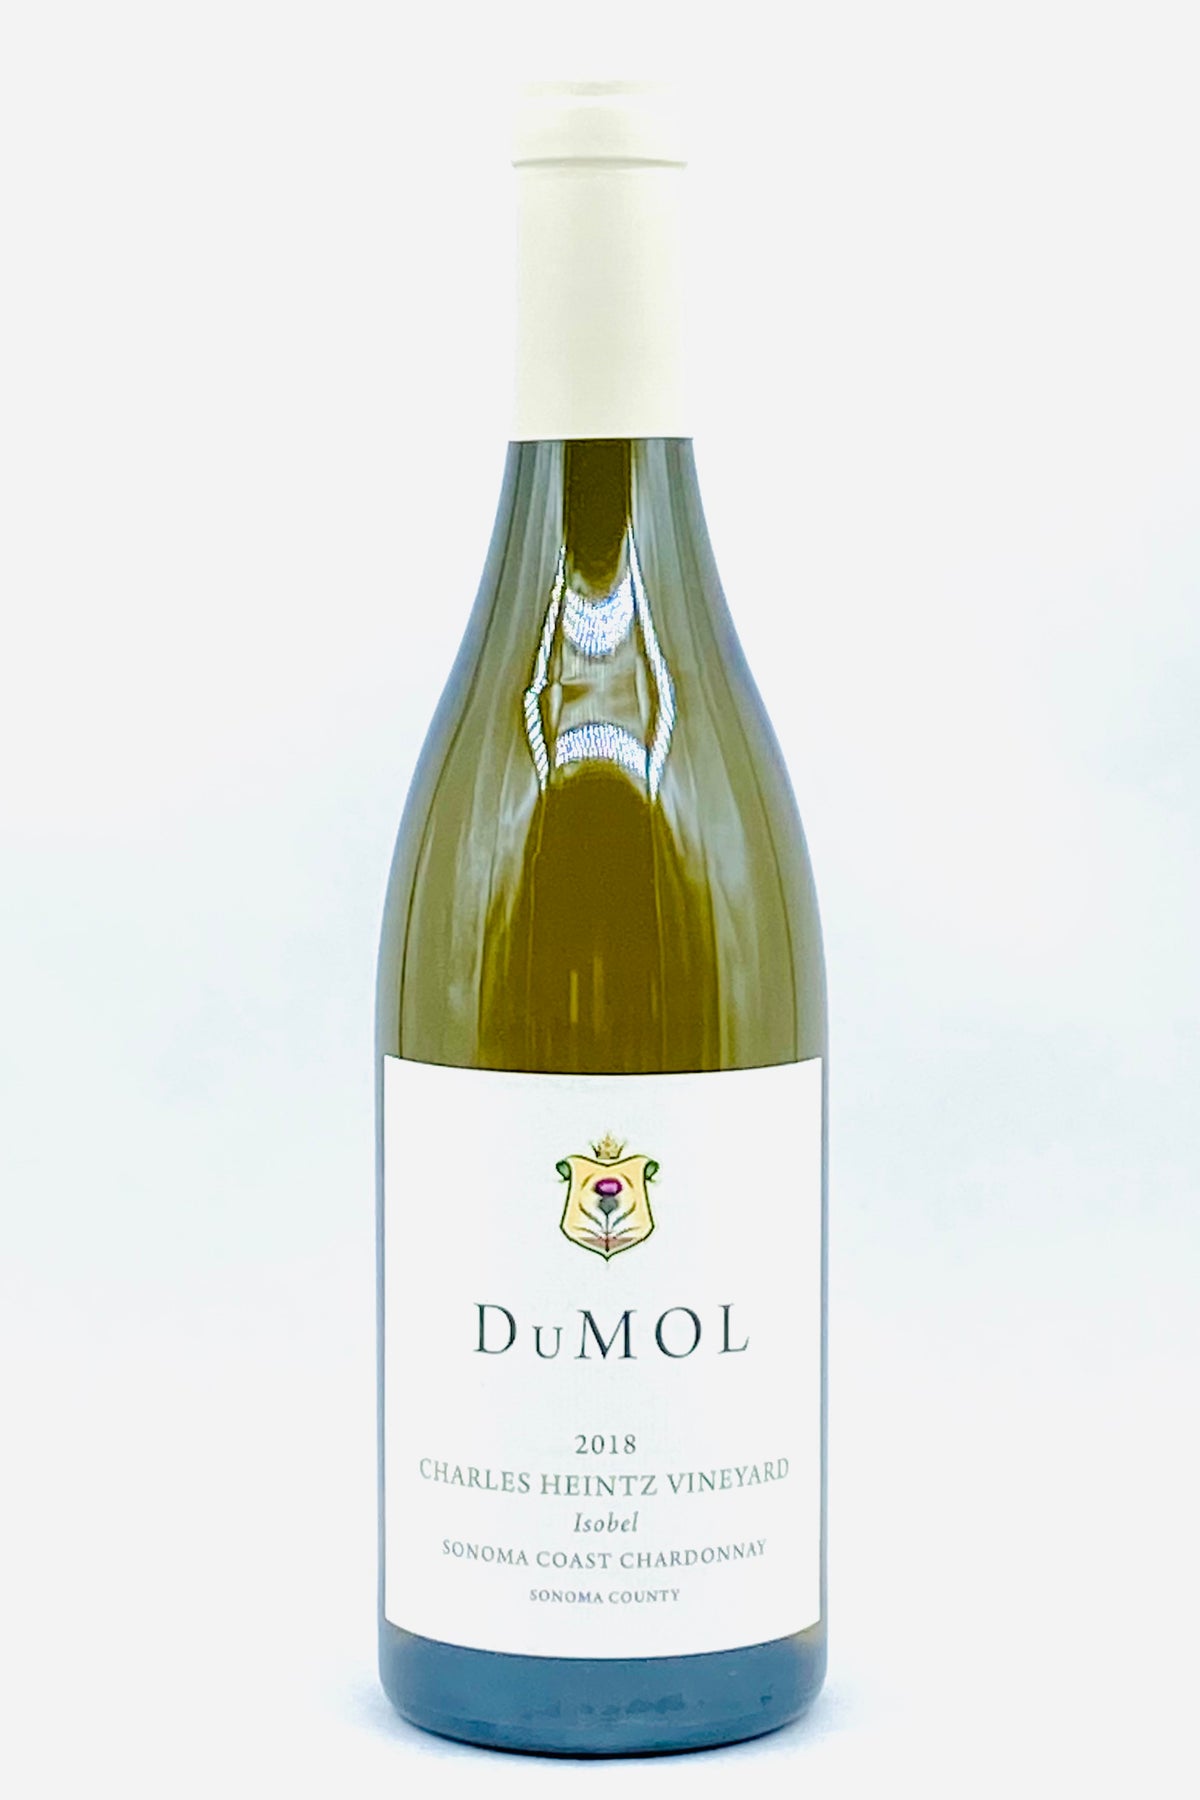 DuMol 2018 Chardonnay Isobel Charles Heintz Vineyard